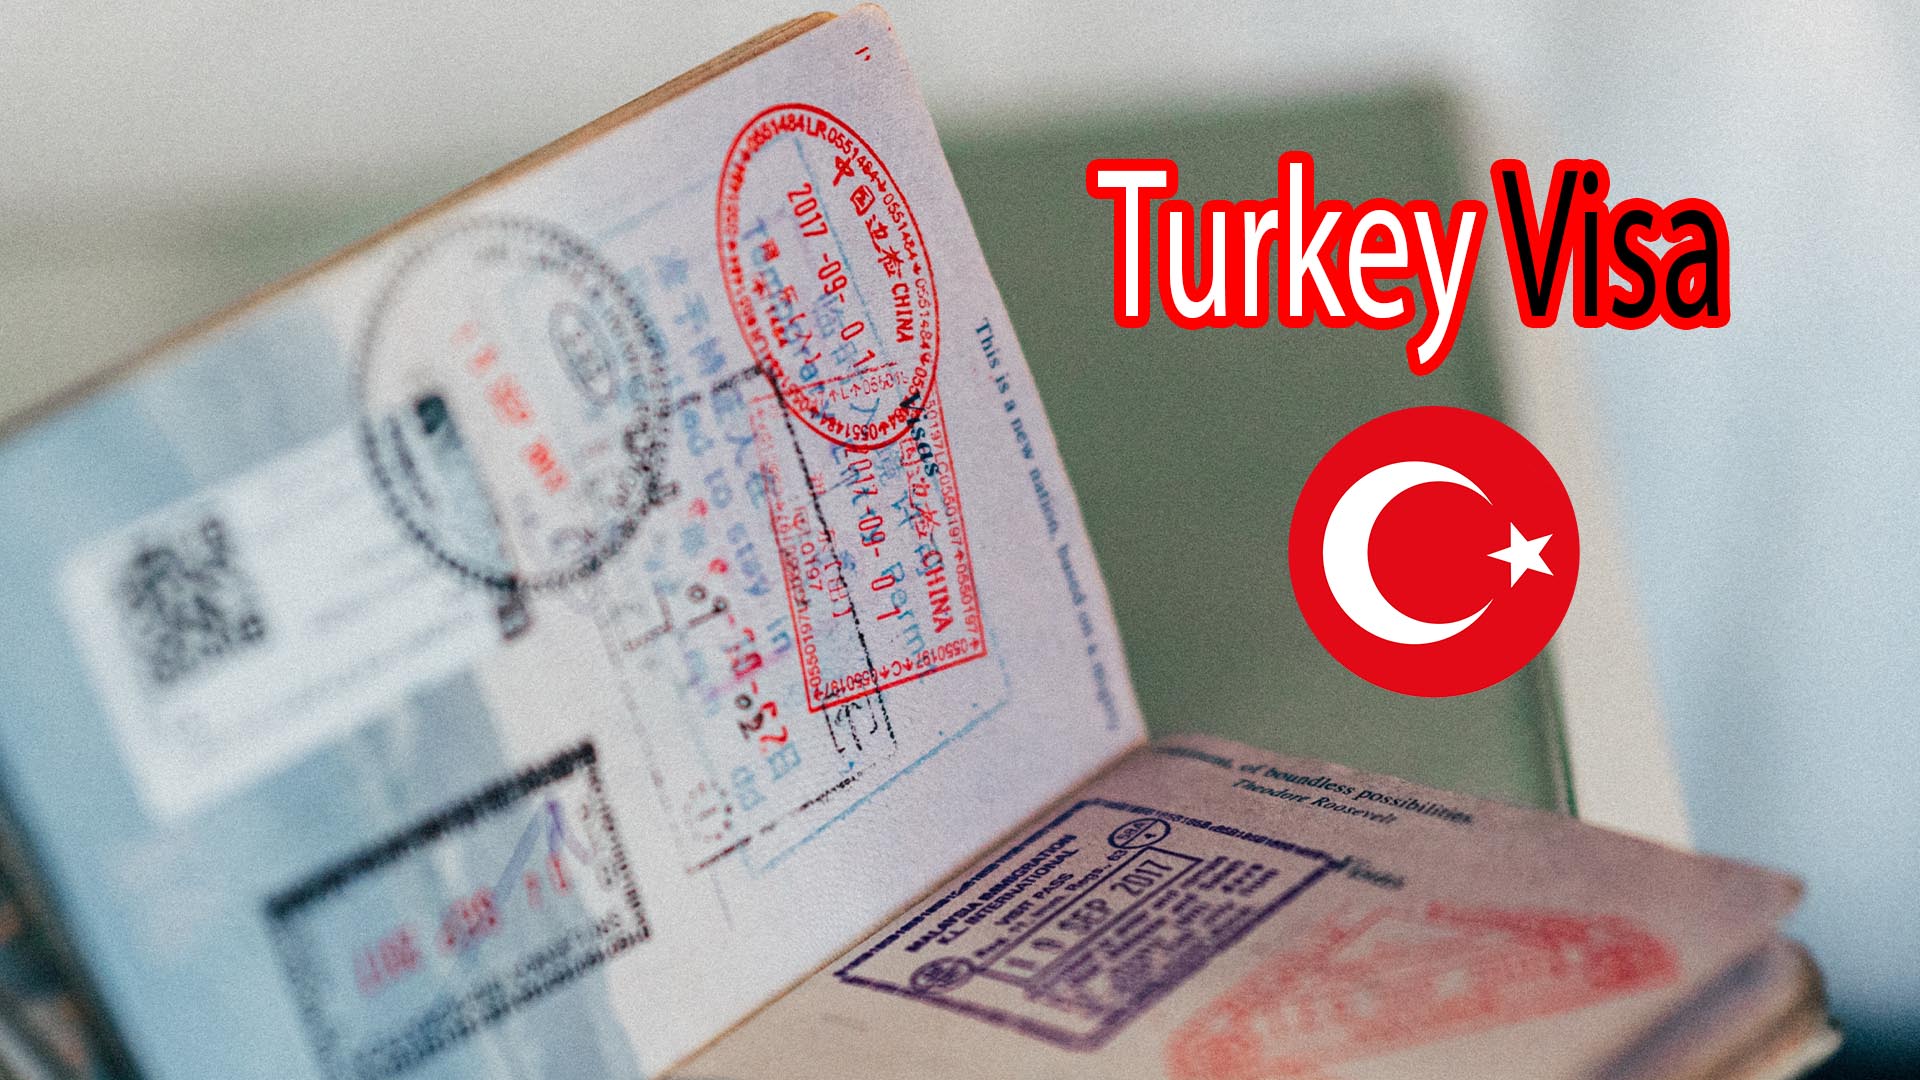 Turkish visa application center Dhaka